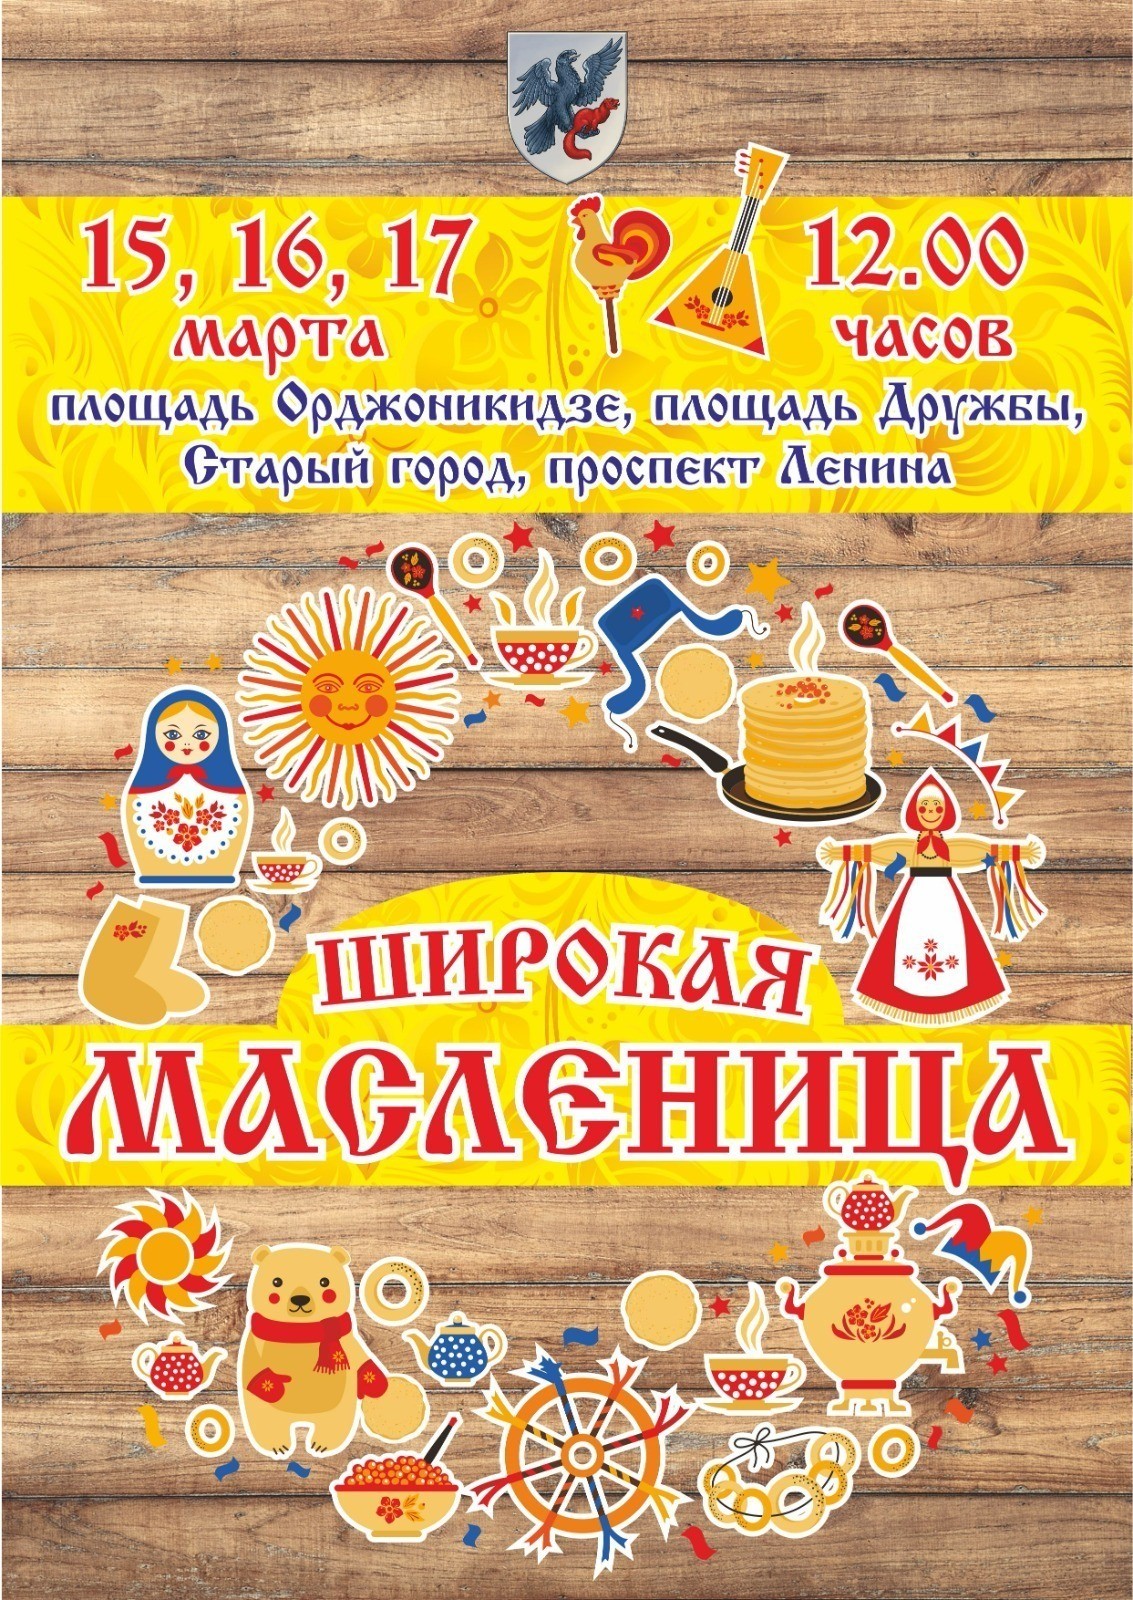 Масленица в Якутске: Программа праздничных мероприятий